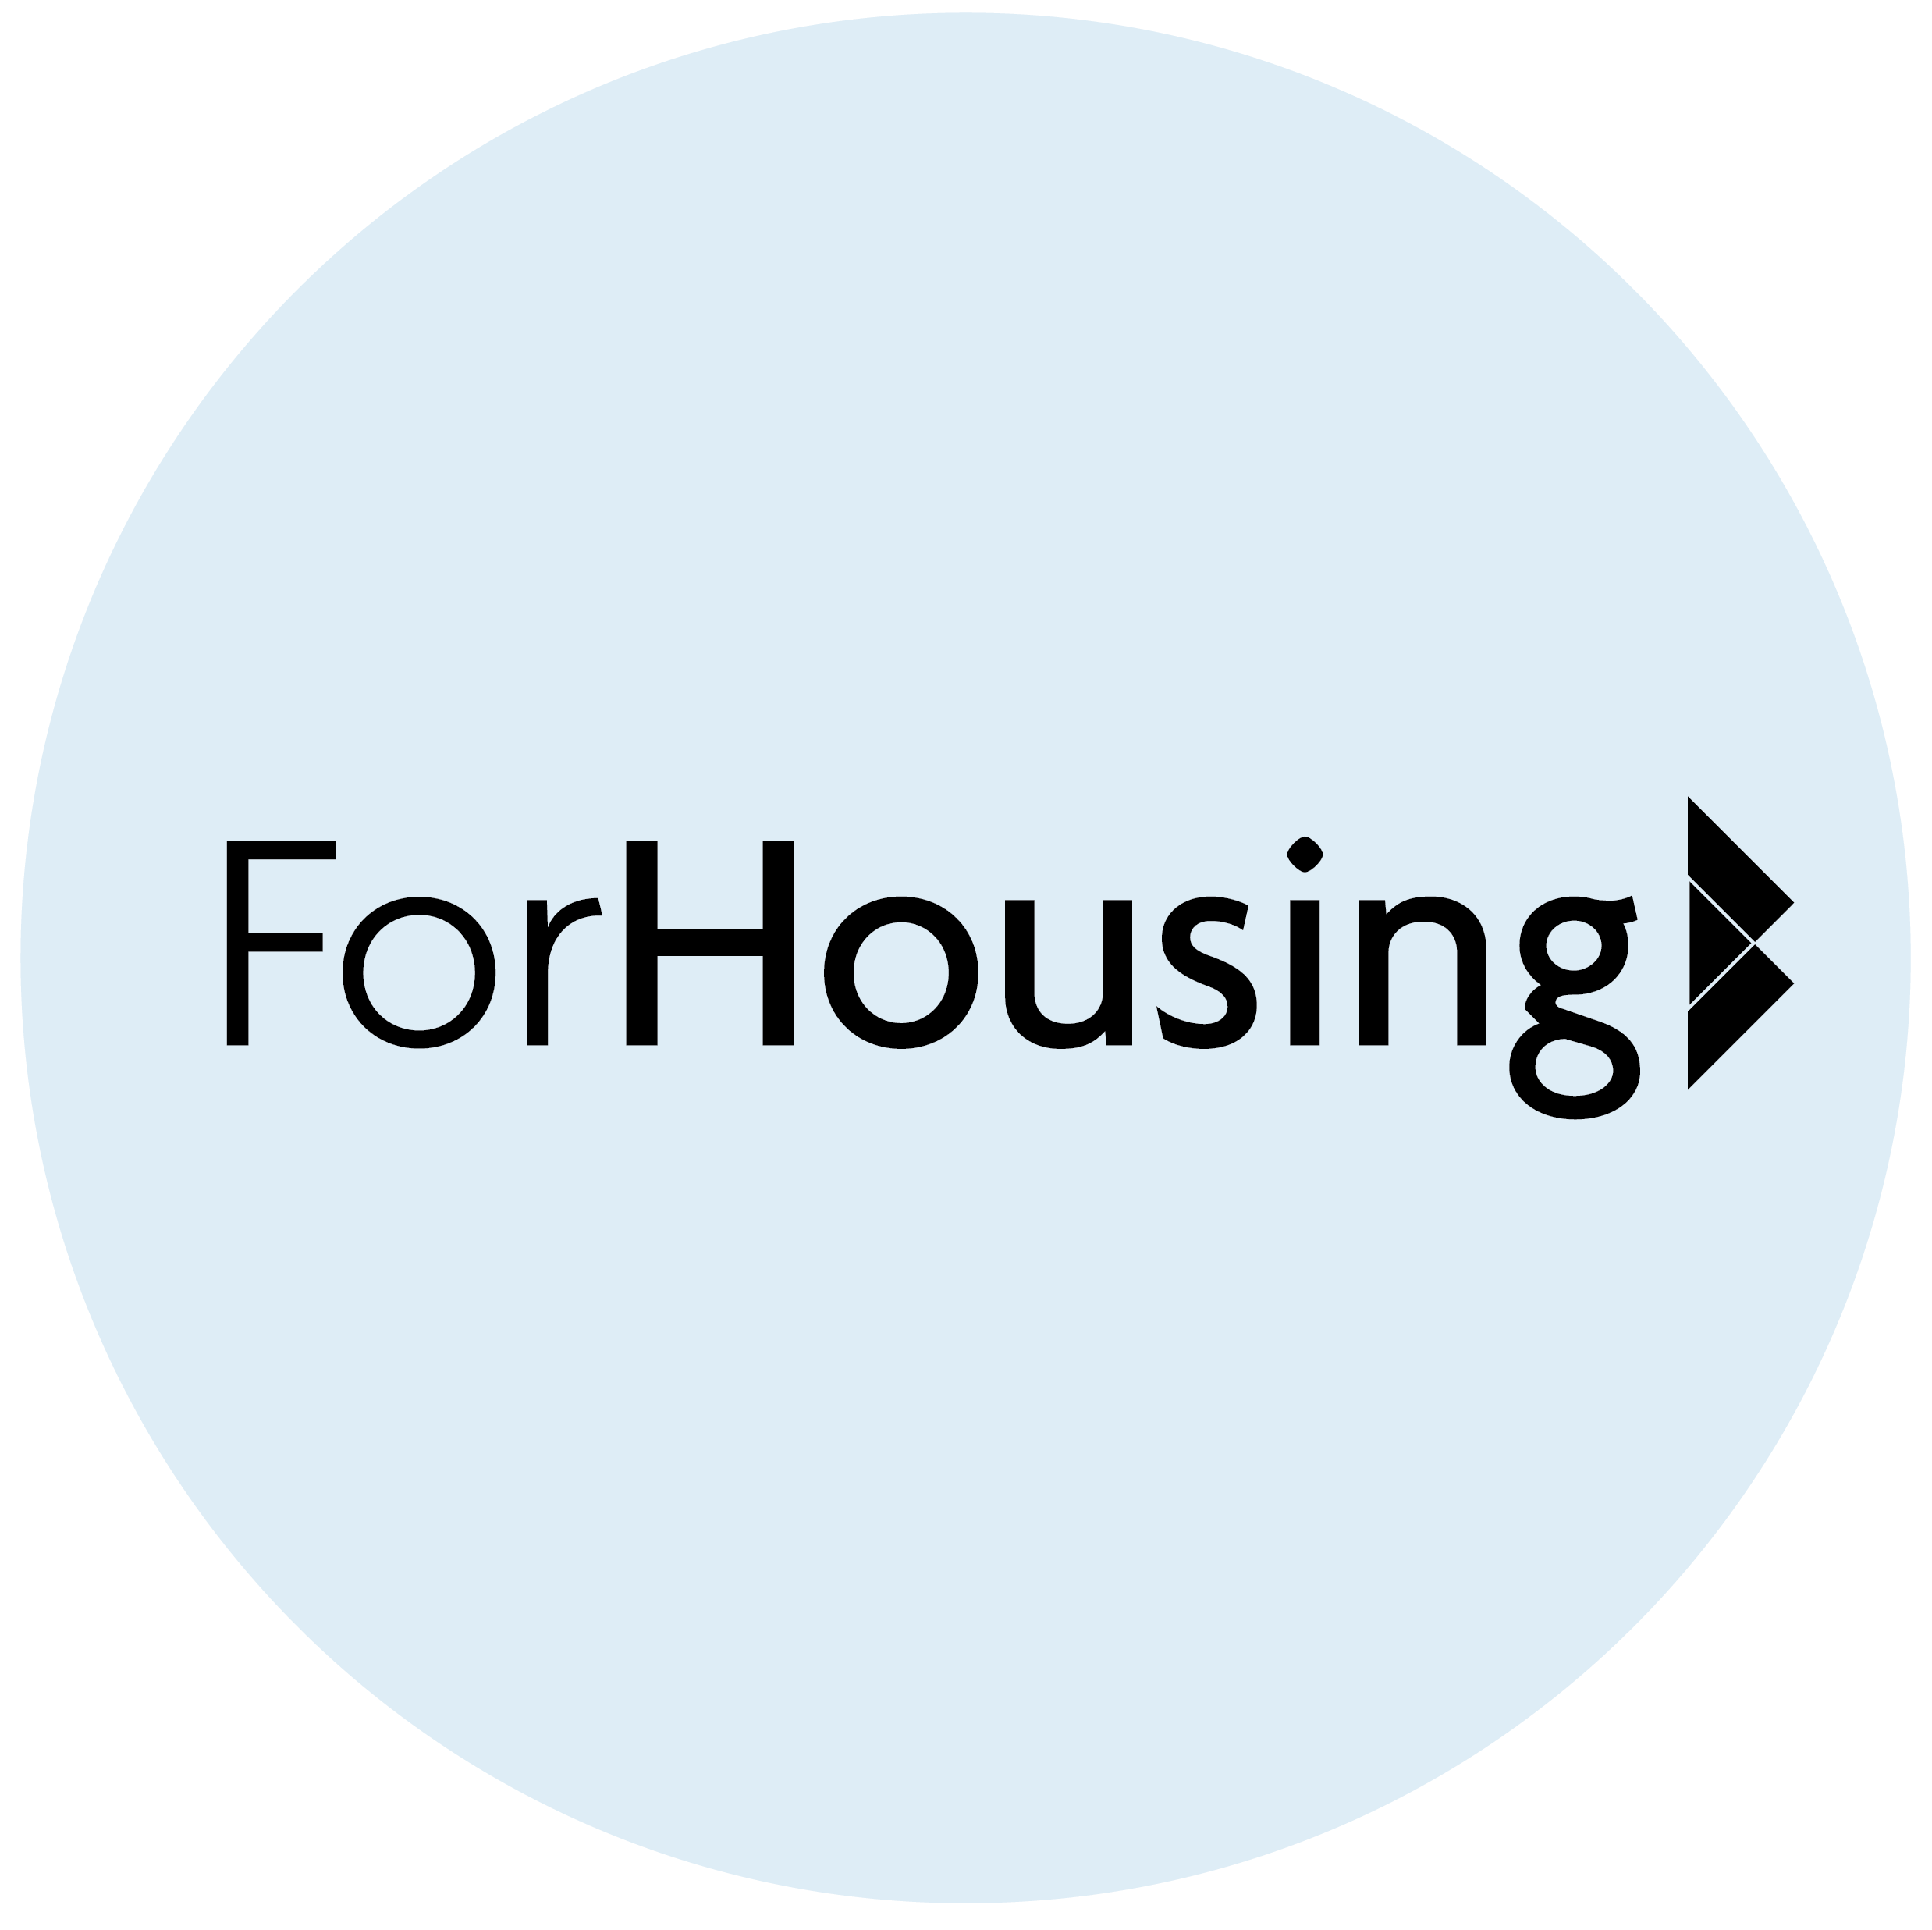 Homes, neighbourhoods and communities contract